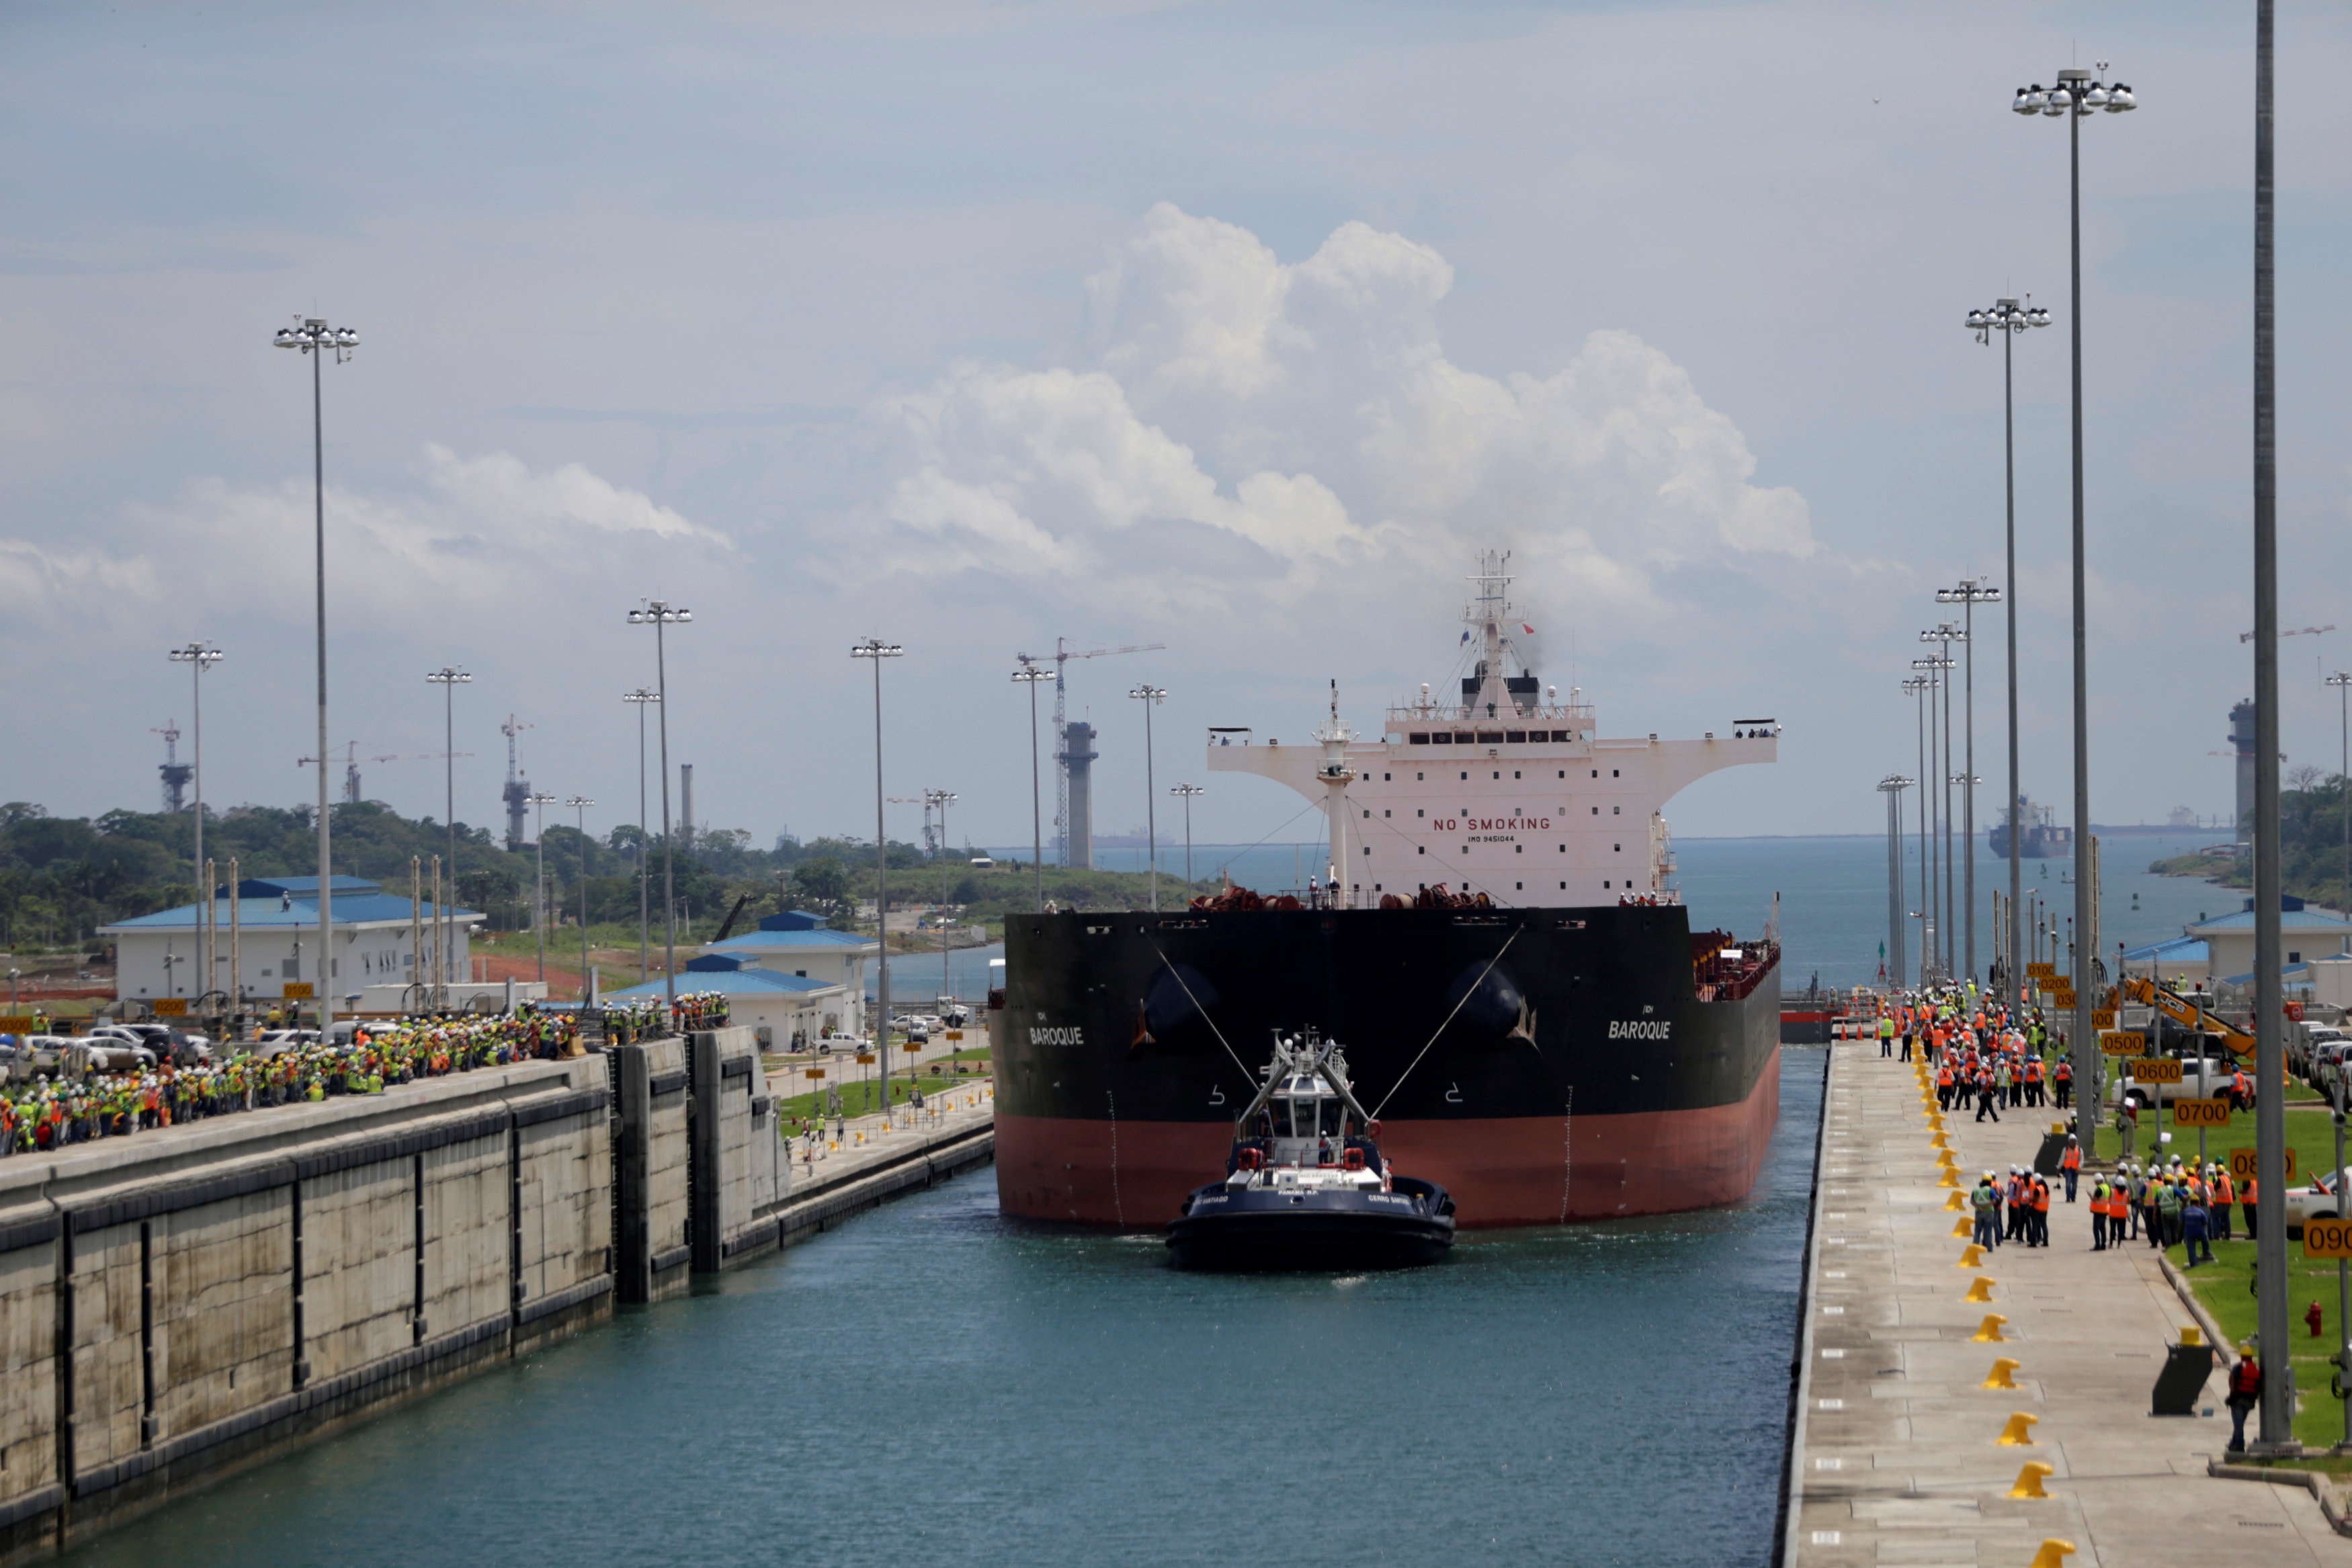 Dự án nâng cấp kênh đào Panama bắt đầu được triển khai từ năm 2007. Dự án này tiêu tốn 5,4 tỷ USD và thời gian hoàn thành công trình là 9 năm (Ảnh: Reuters)